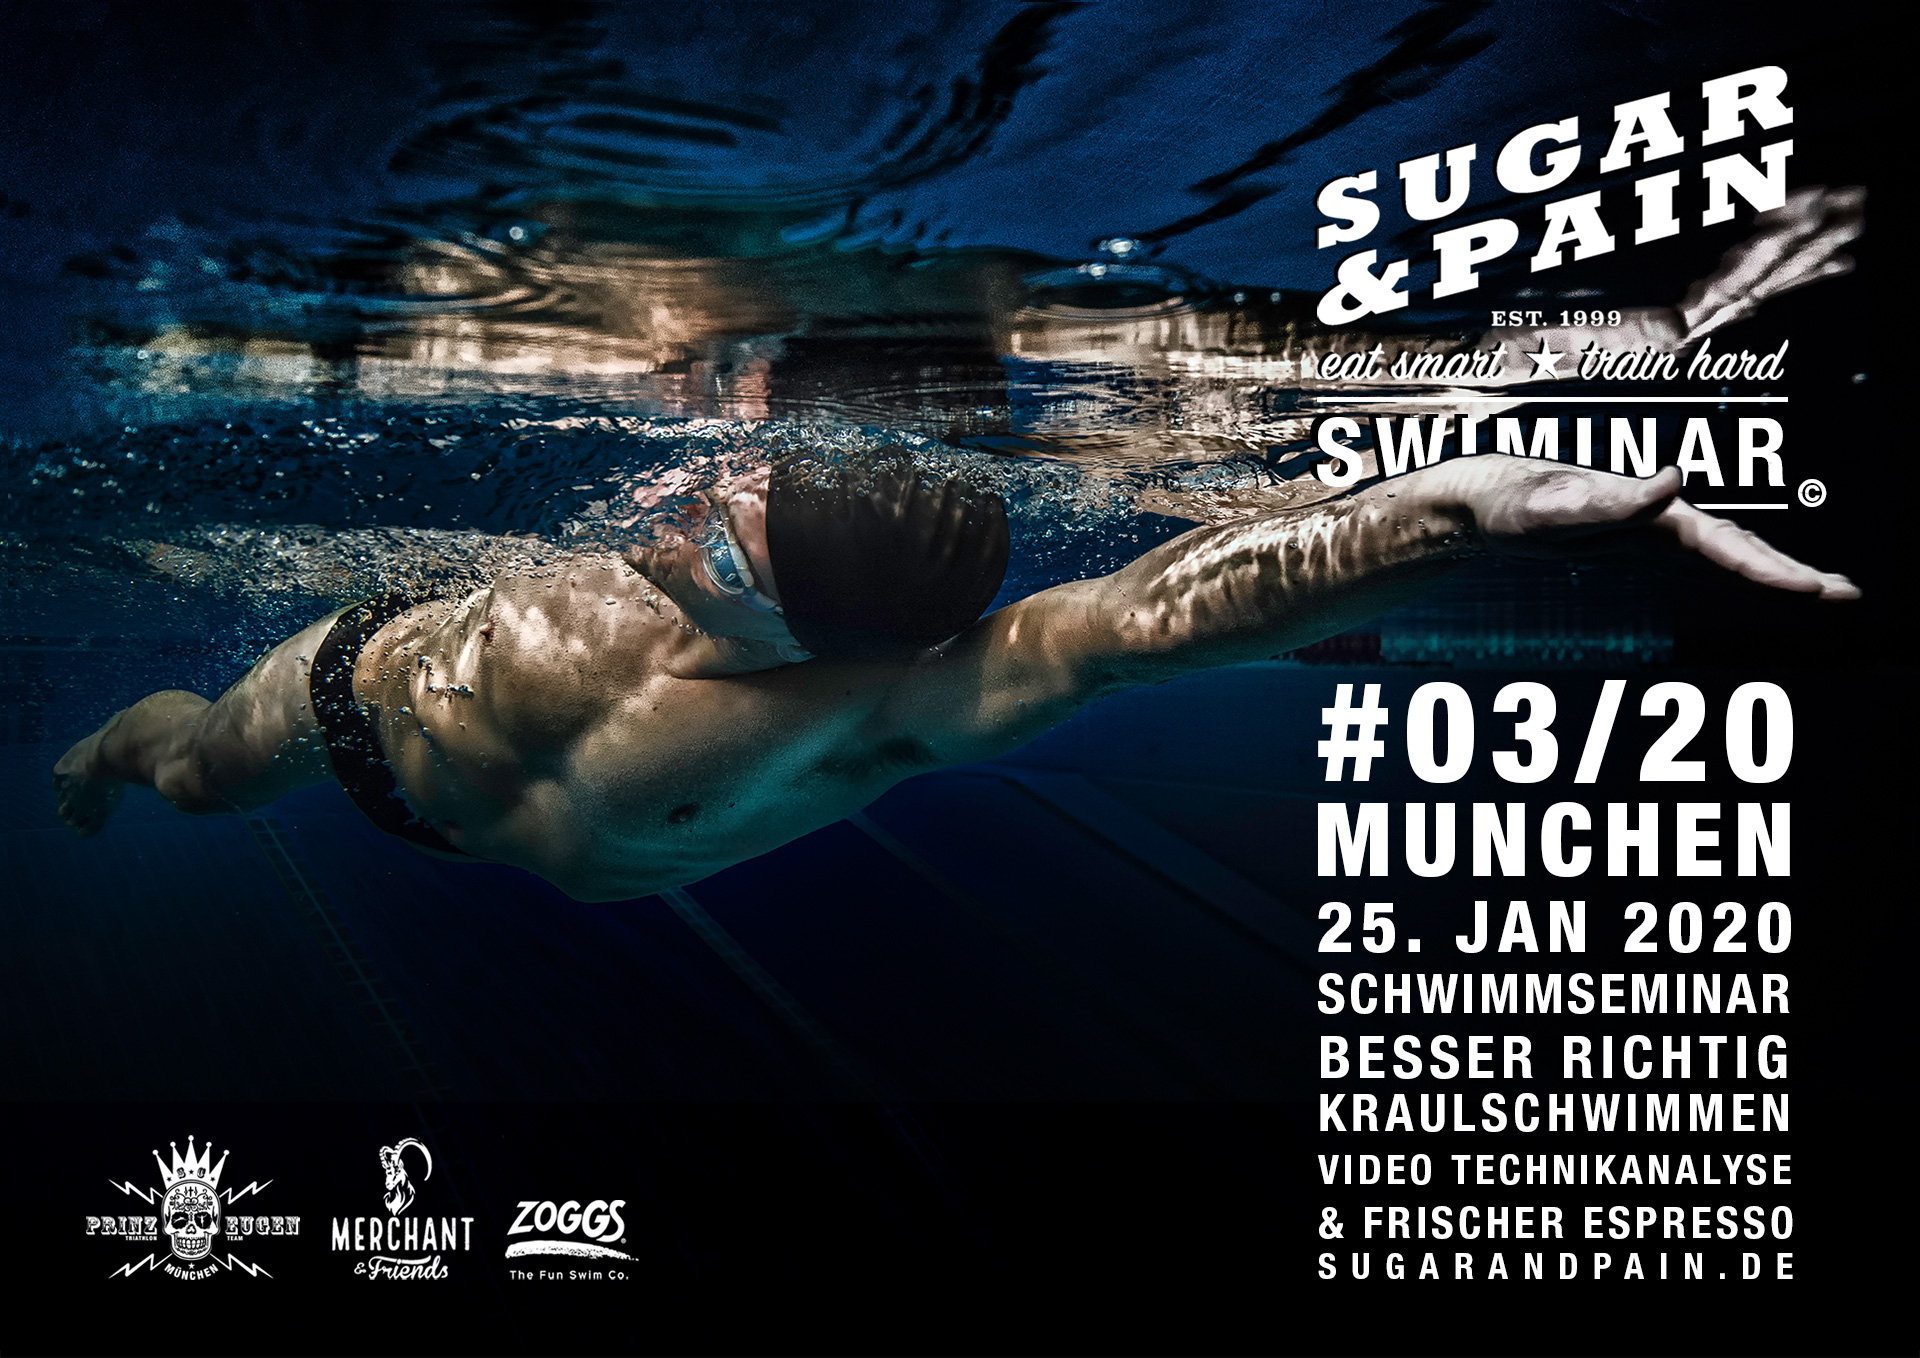 SUGAR & PAIN SWIMINAR #03/20 Richtige Kraultechnik – Das Schwimmseminar mit Videoanalyse / Titel © Stefan Drexl